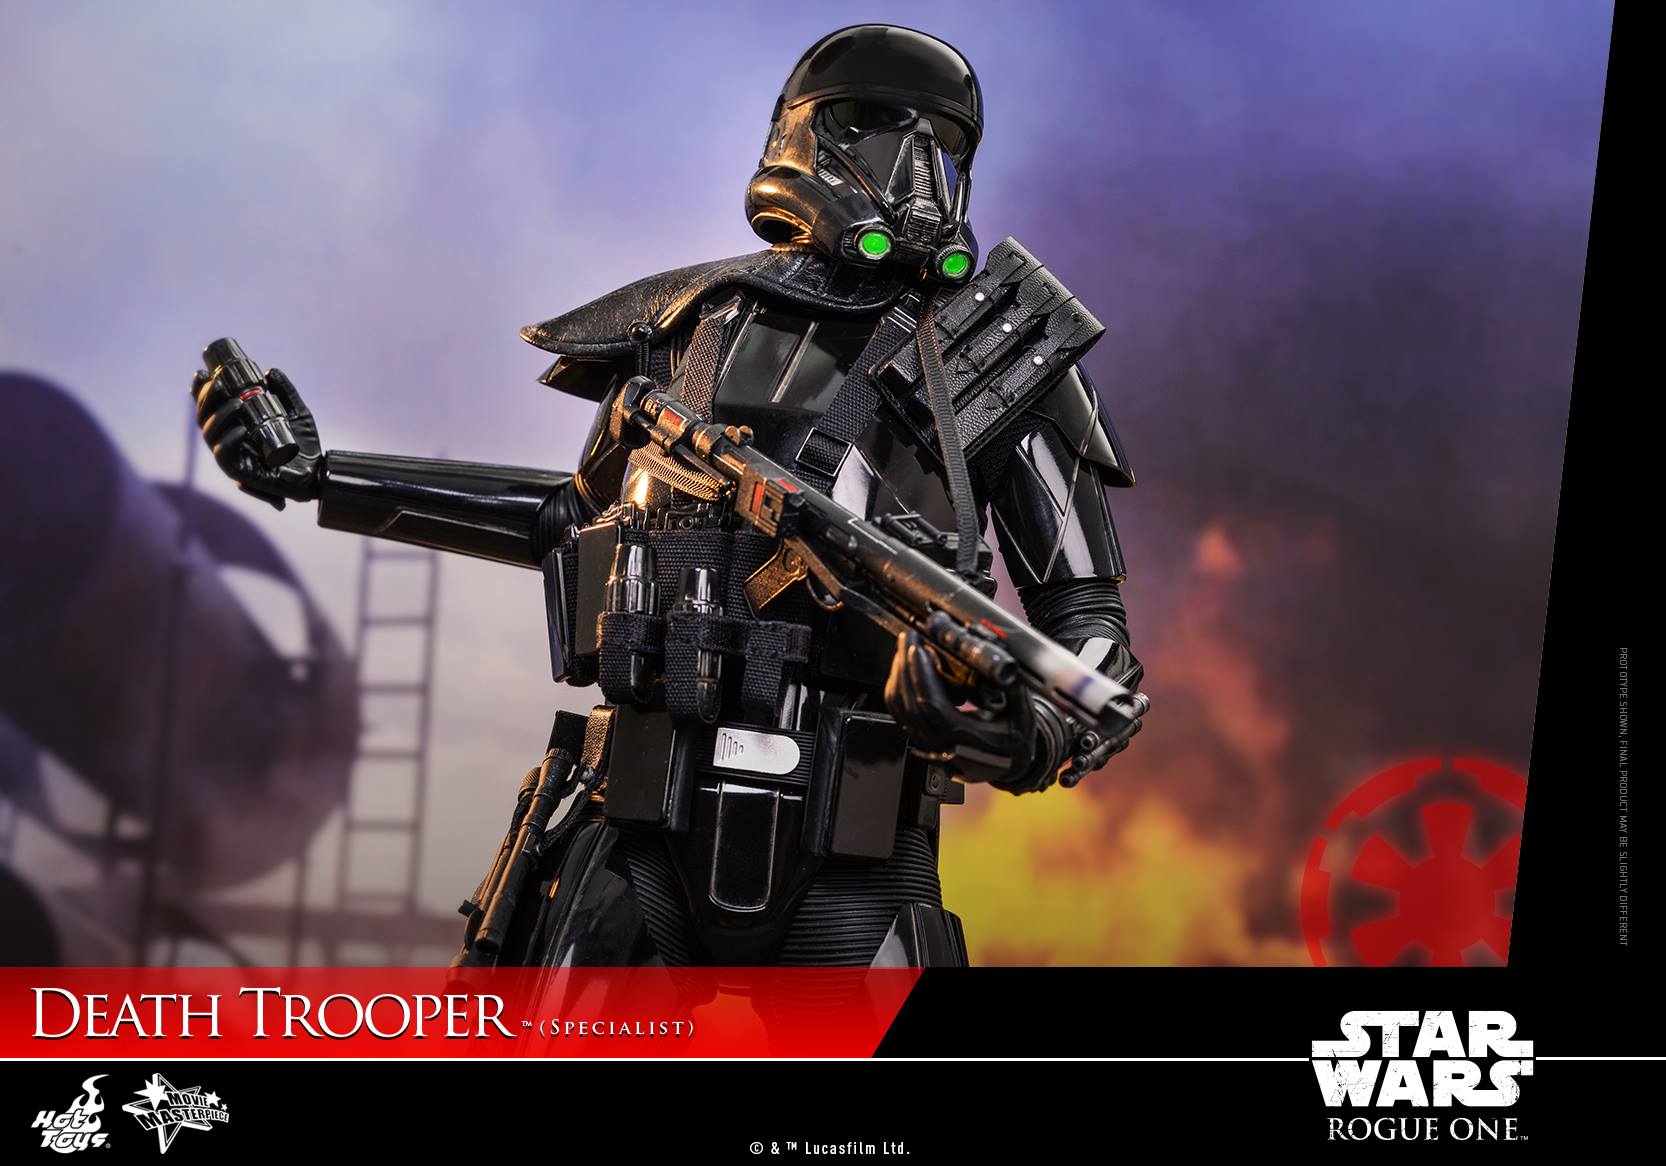 Hot Toys Death Trooper Specialist 1/6 Scale Figur veröffentlicht